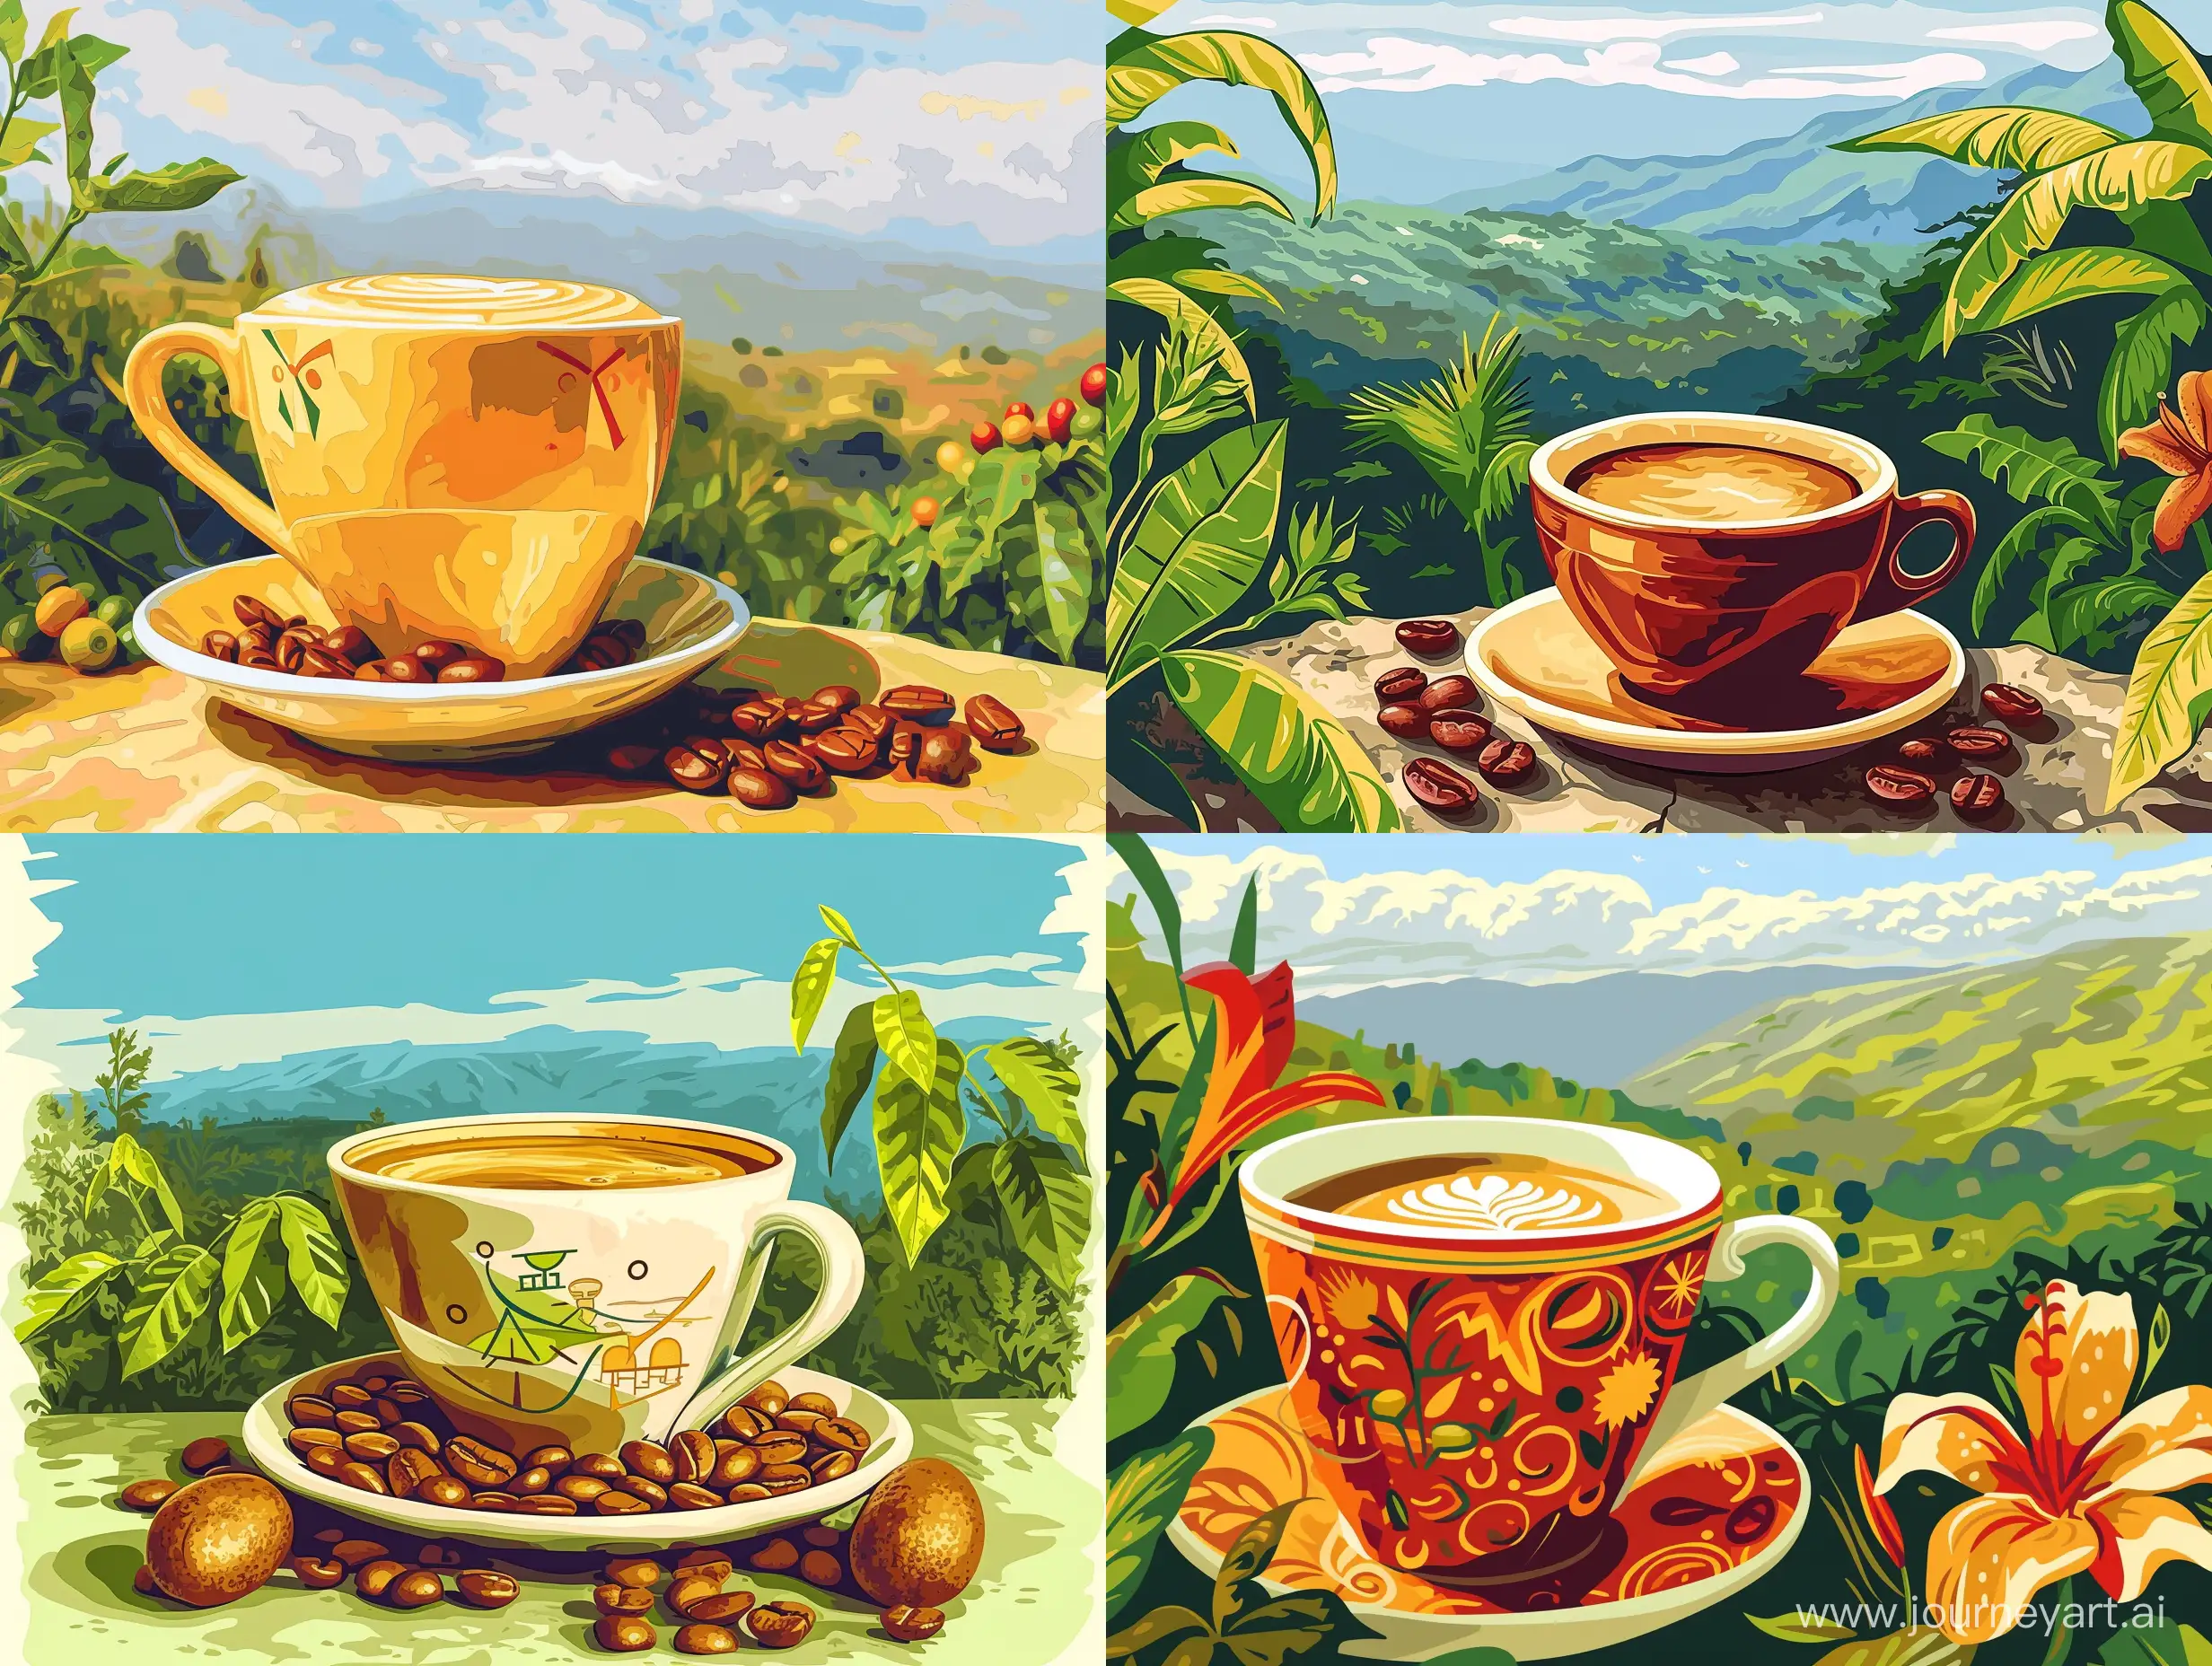 яркая и сочная иллюстрация нарисованная  в  Photoshop большая чашка с кофе и символы Эфиопии,  природа Эфиопии на заднем плане